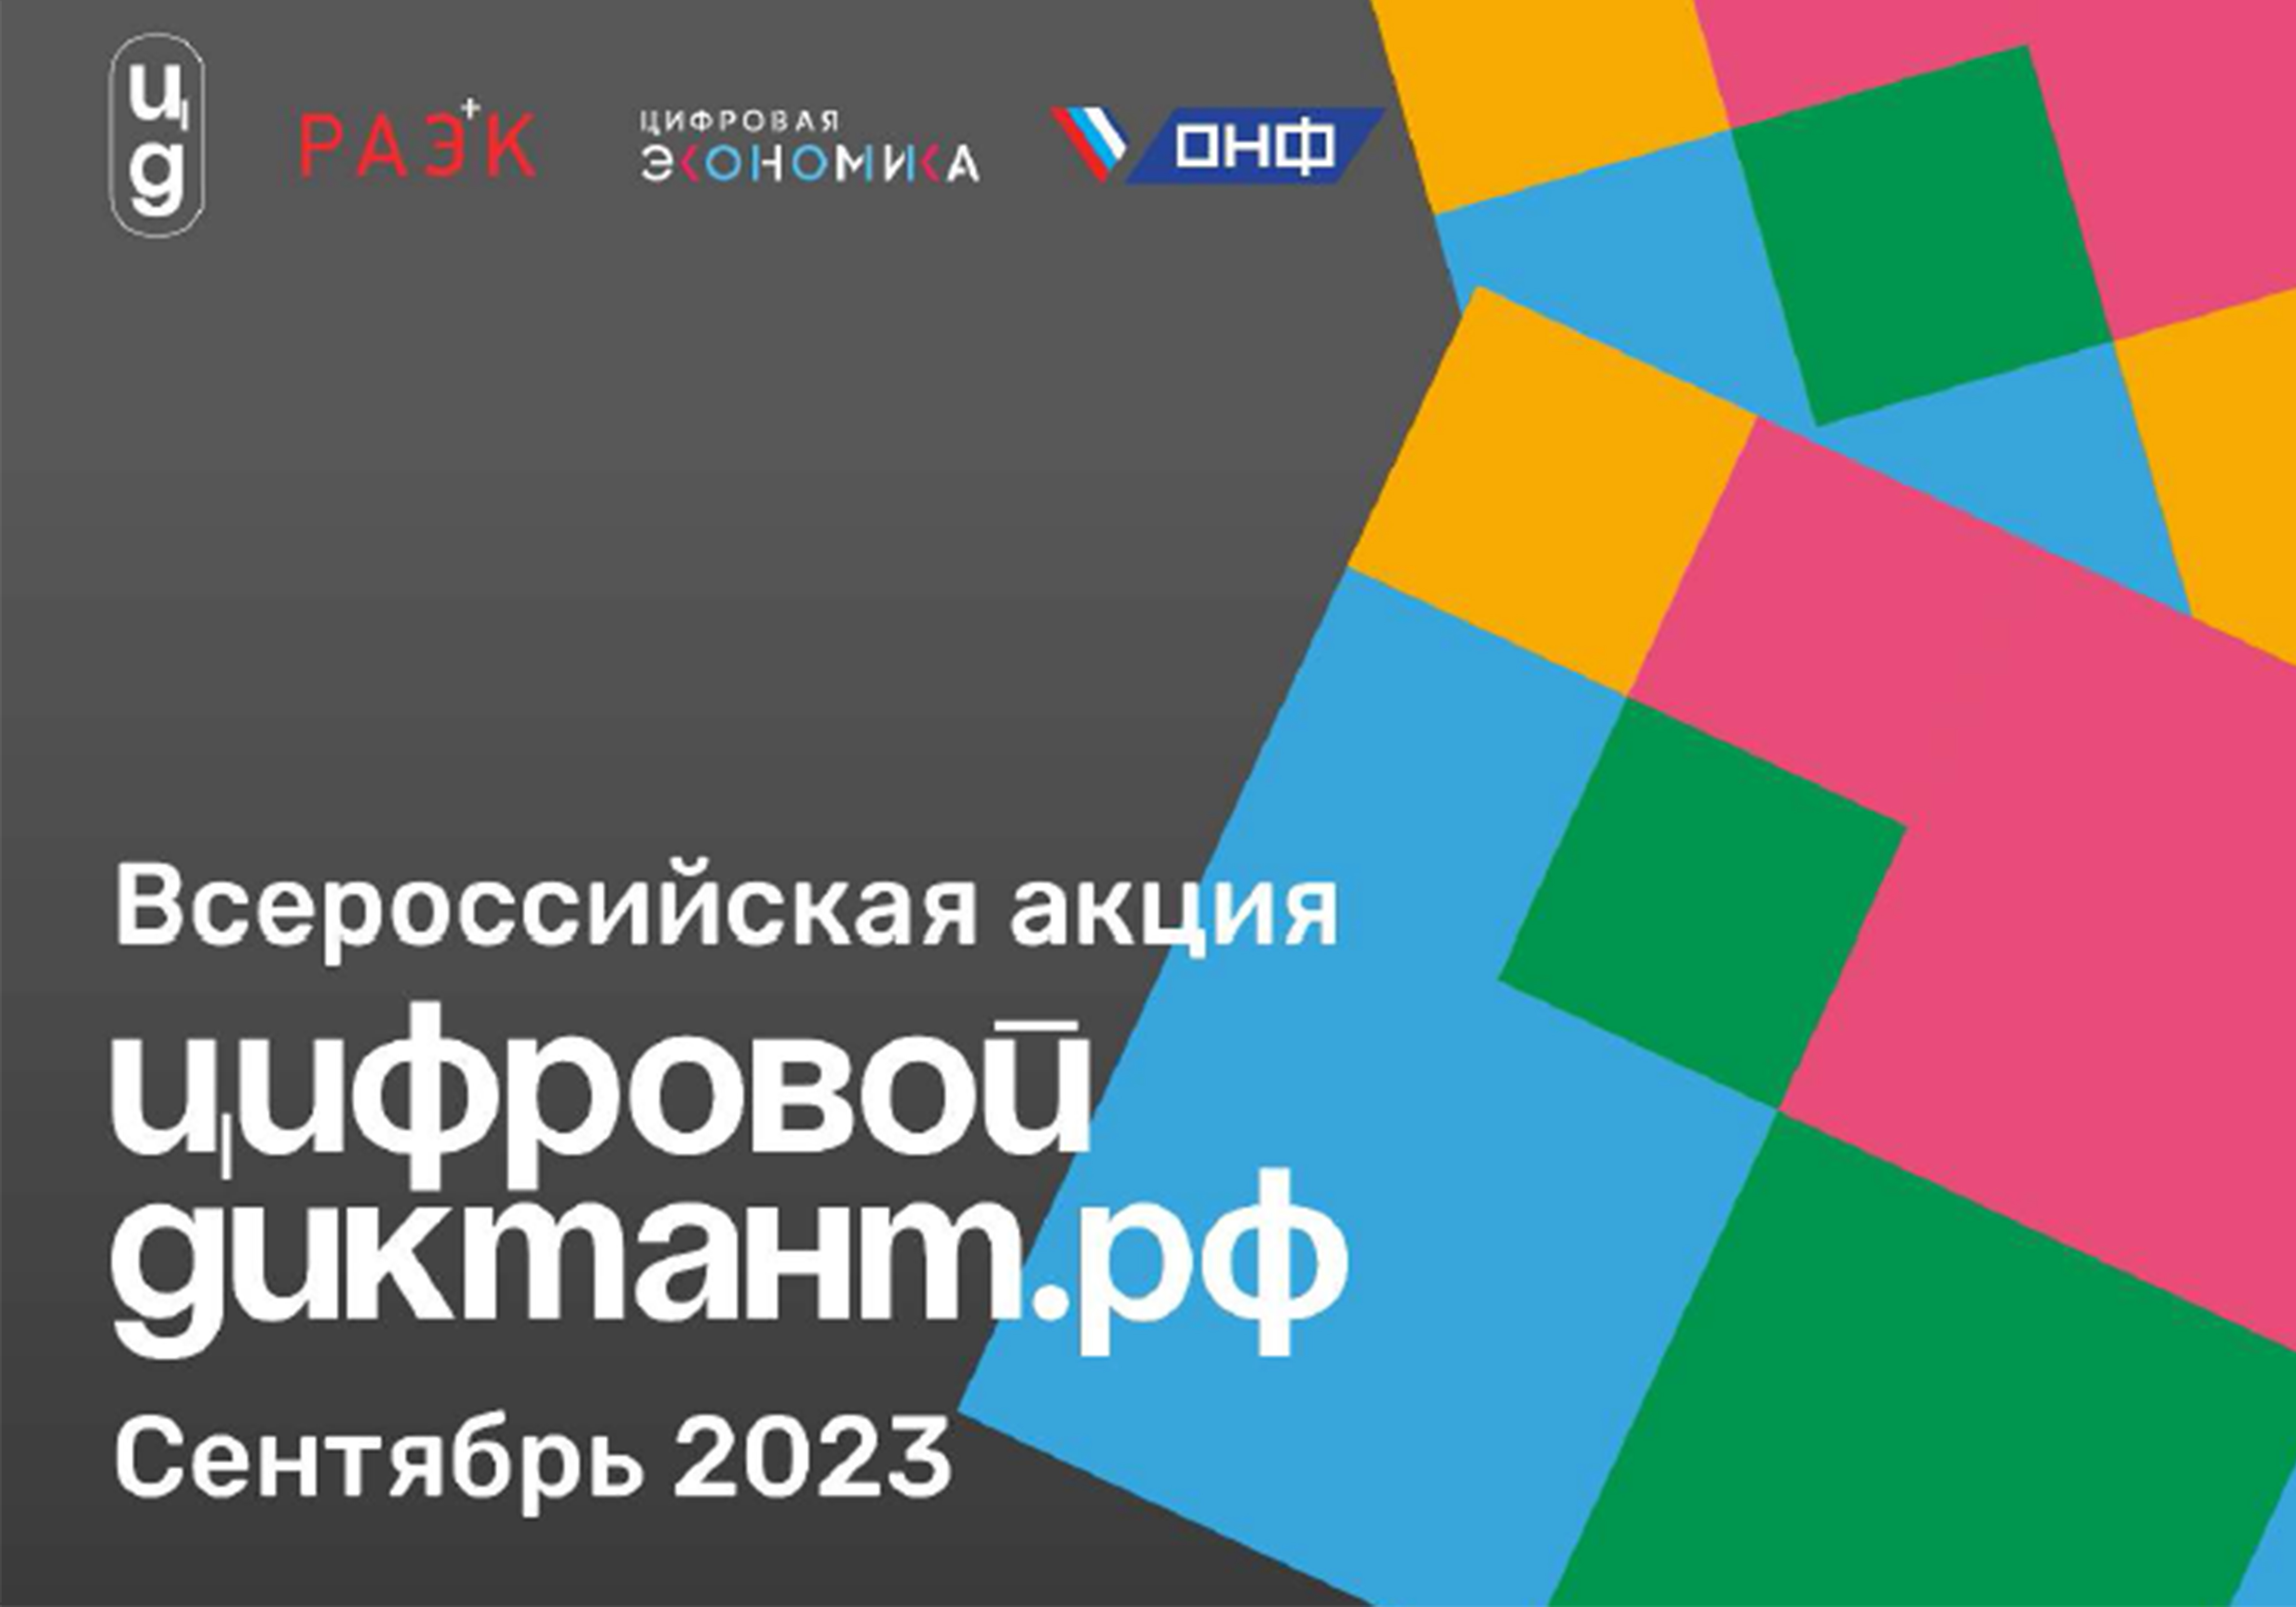 Минцифры России информирует о проведении в период с 29 сентября по 15 октября 2023 г. Всероссийской акции «Цифровой диктант».